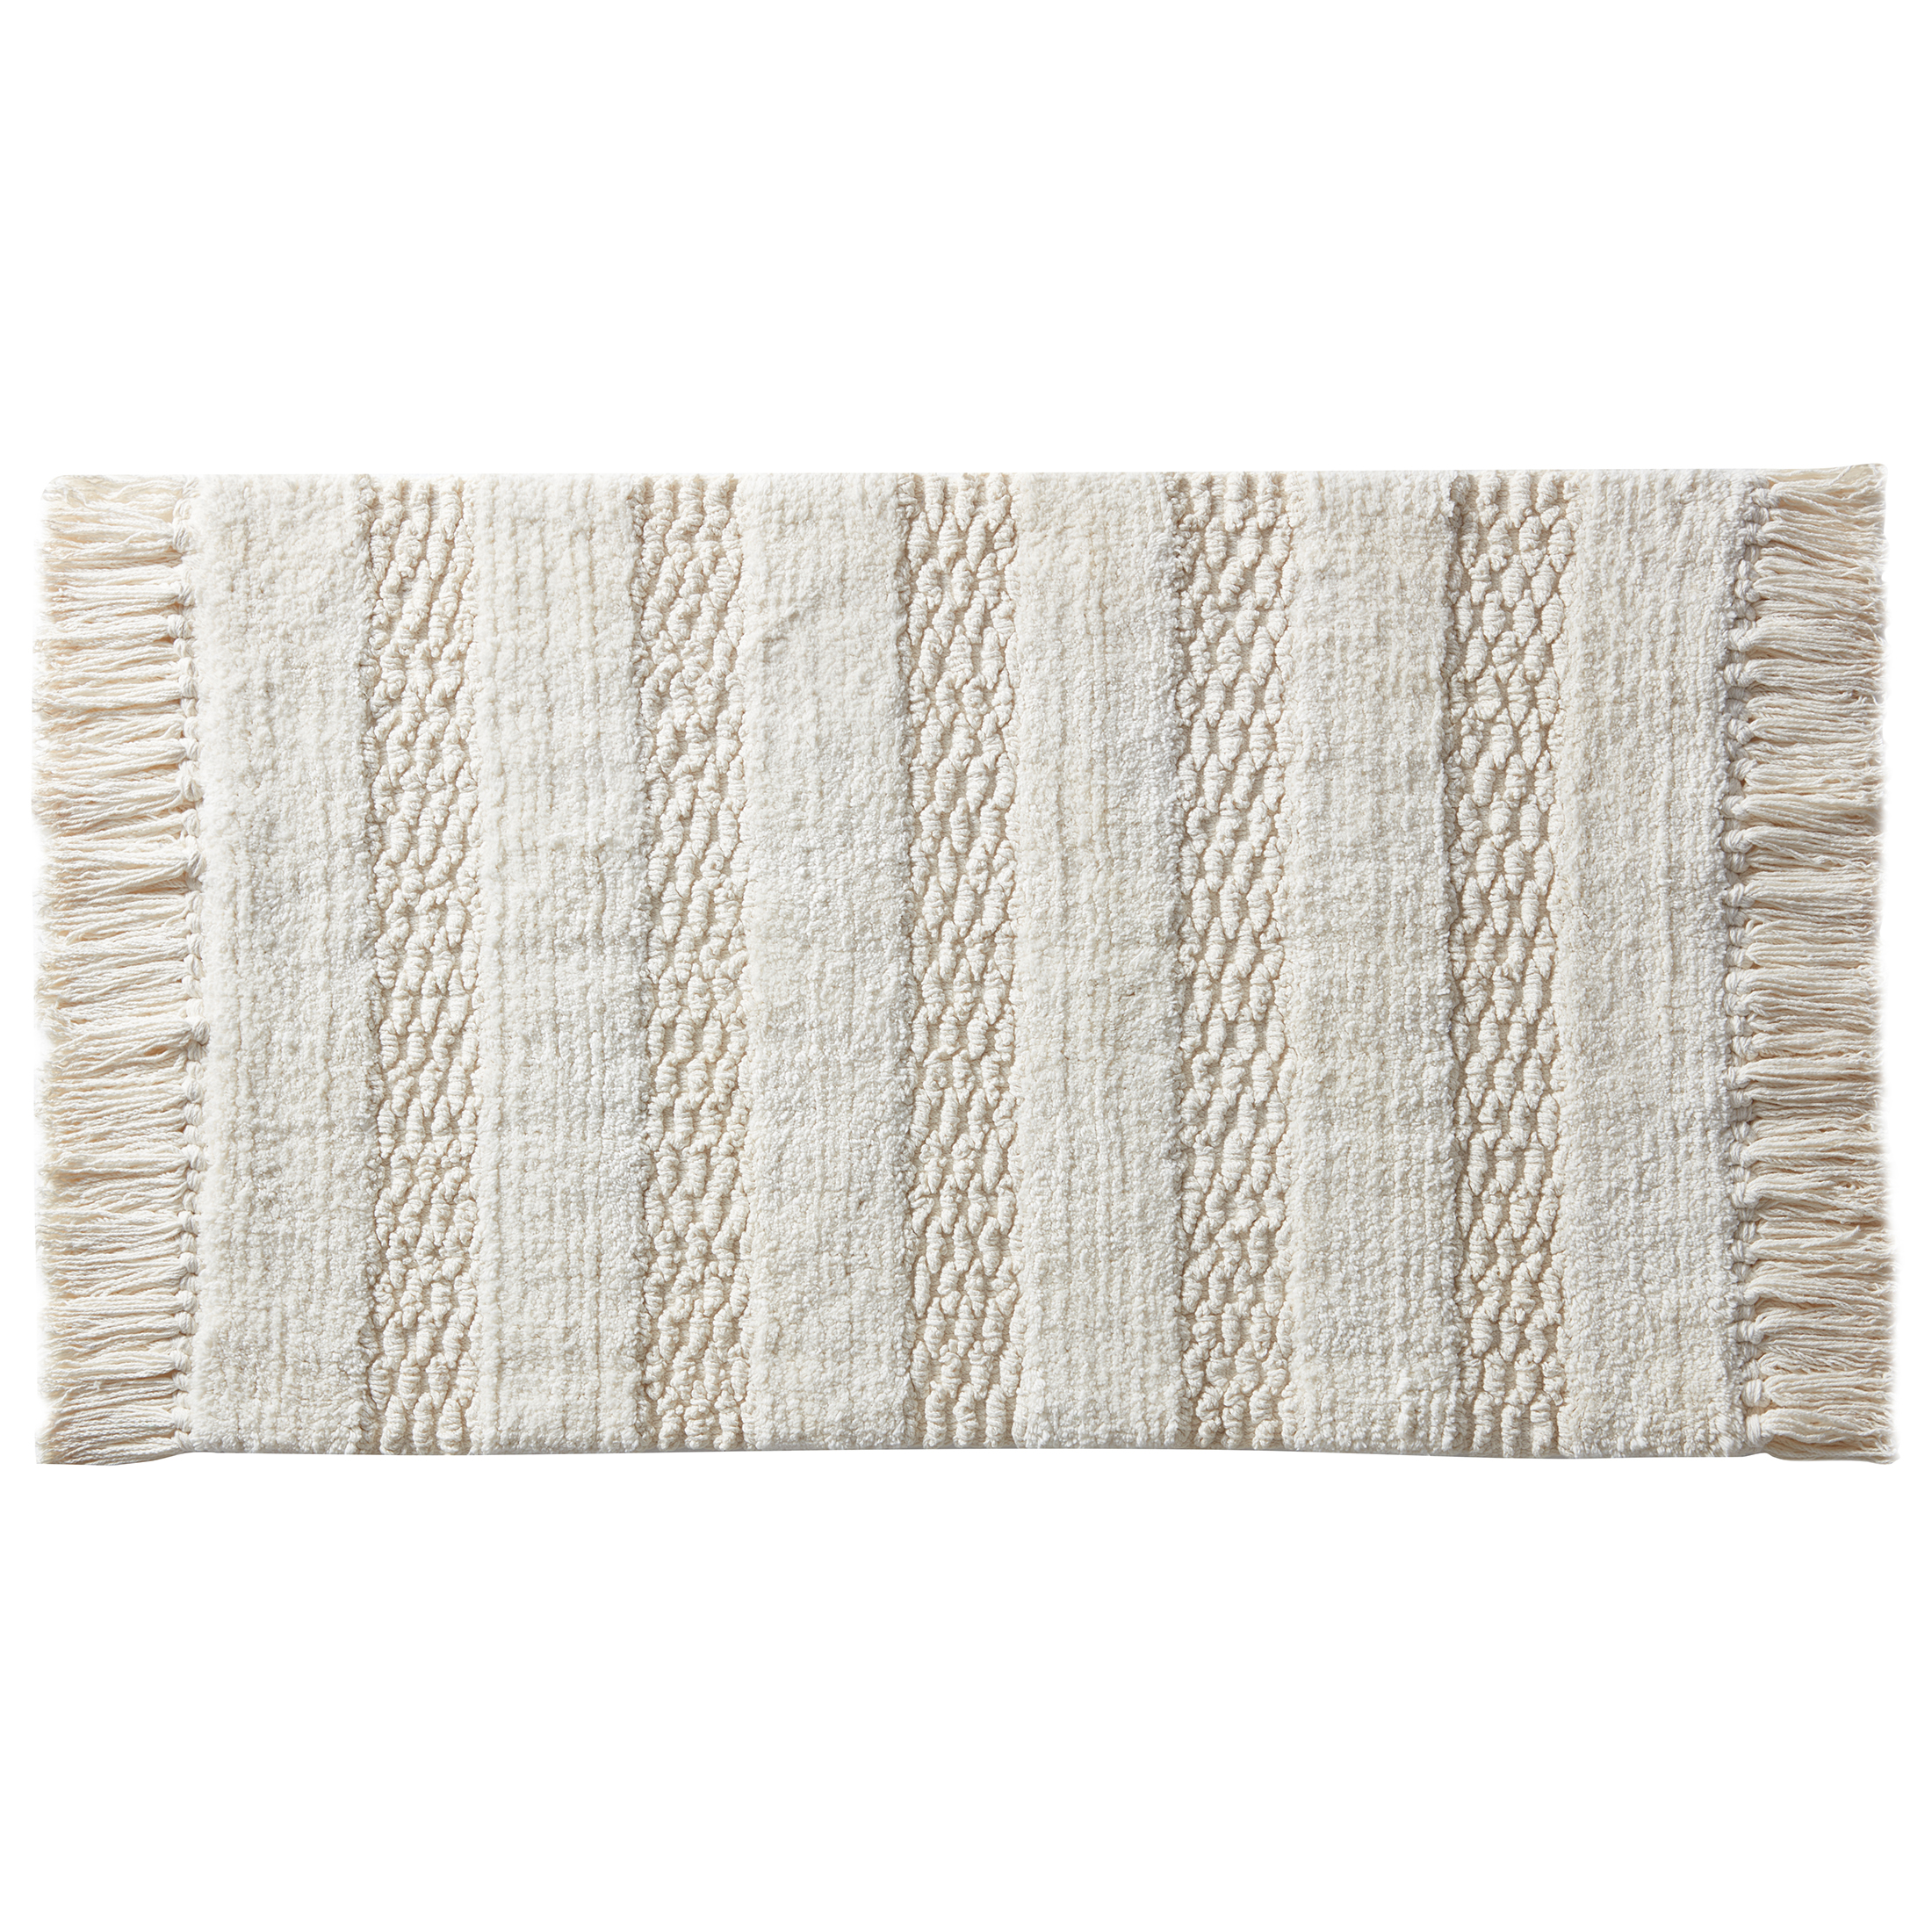 My Texas House Lancaster Fringe Cotton Bath Rug , Ivory, 20" x 32" - image 2 of 6